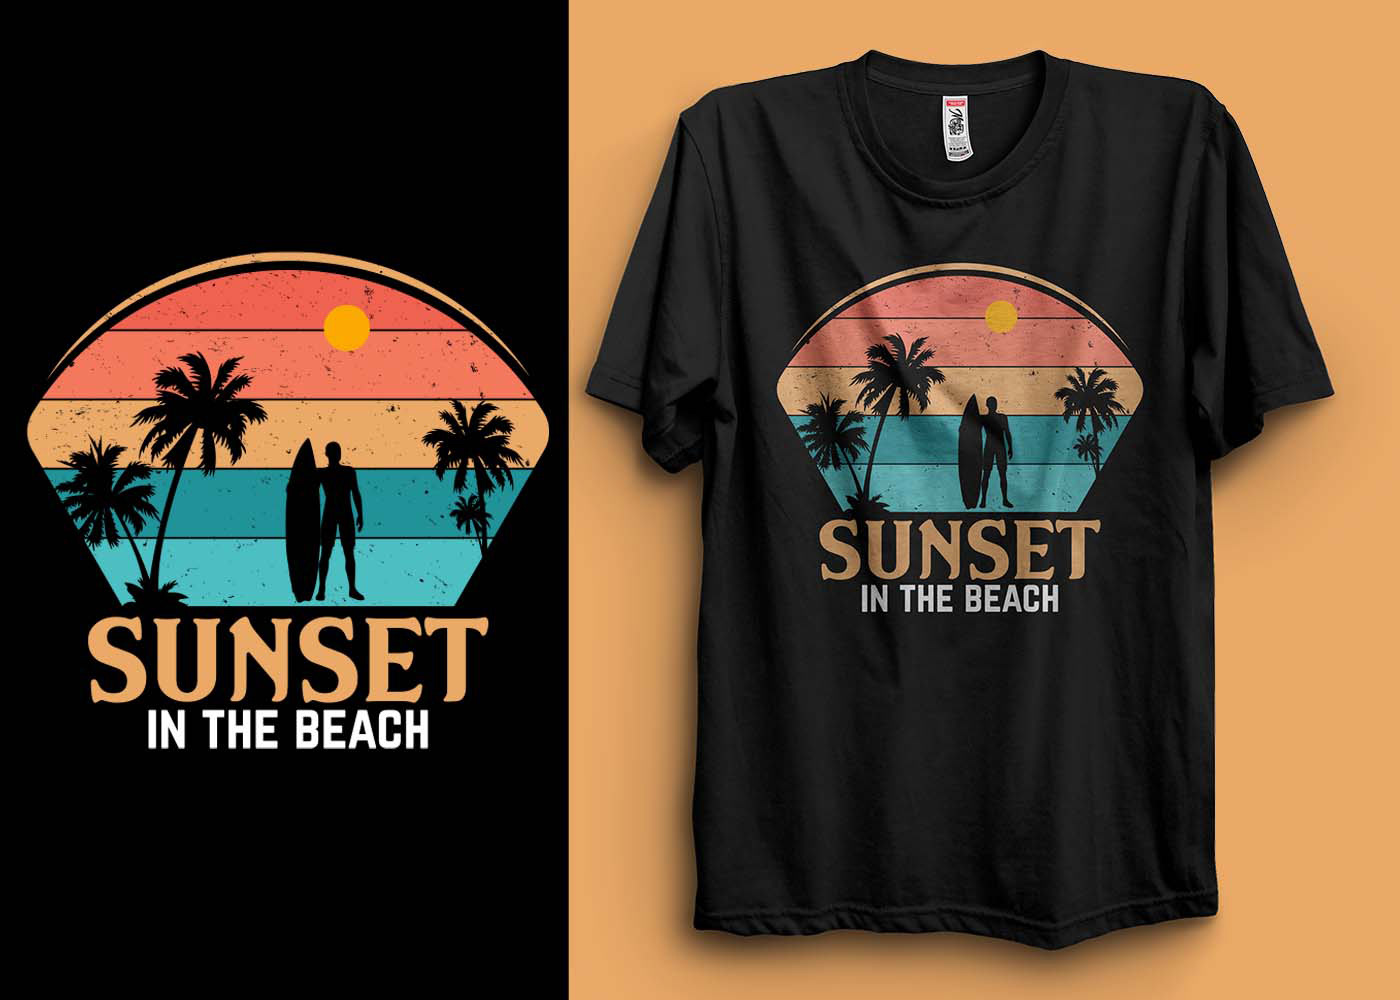 t-shirt T-Shirt Design tshirt Tshirt Design Tshirt design ideas sunset Summer T-shirt design vintage t-shirt retro t-shirt Sunset T-Shirt Design